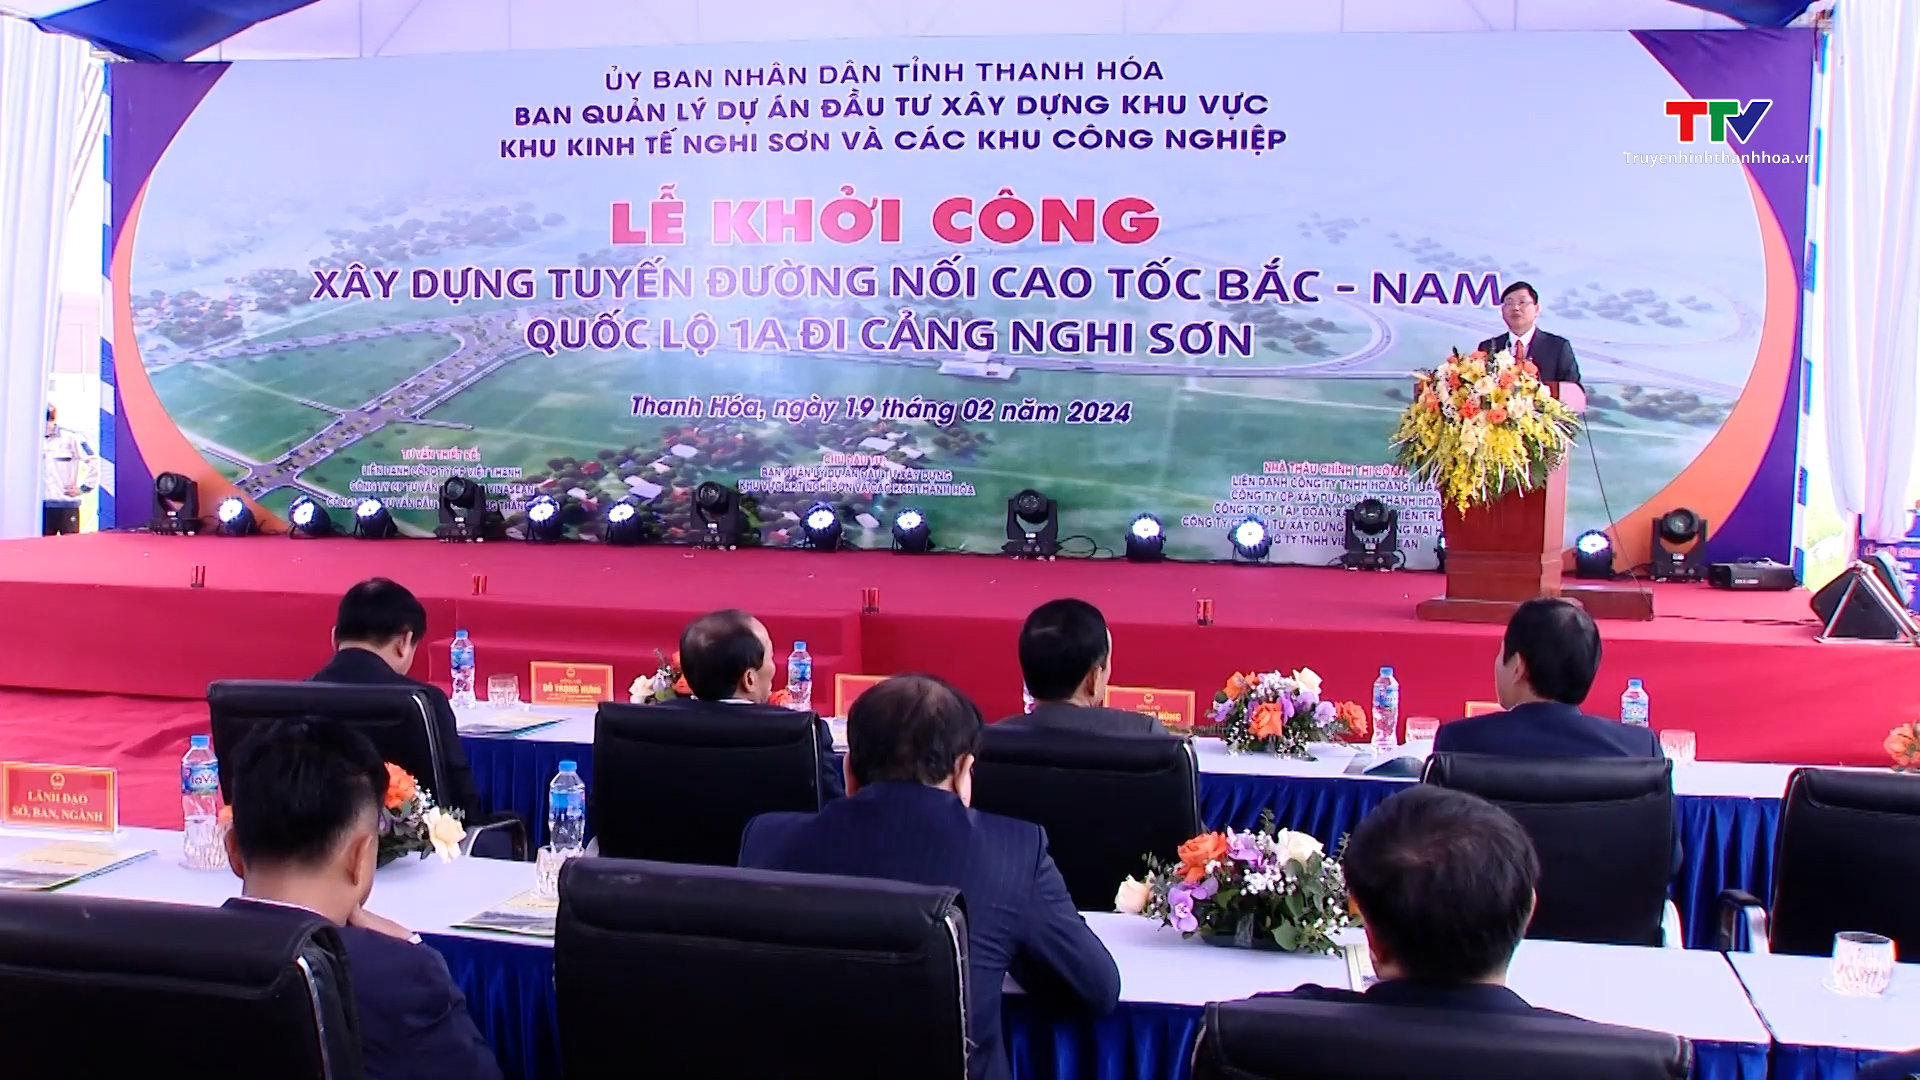 Khởi công tuyến đường nối cao tốc Bắc - Nam, Quốc lộ 1A đi cảng Nghi Sơn- Ảnh 3.